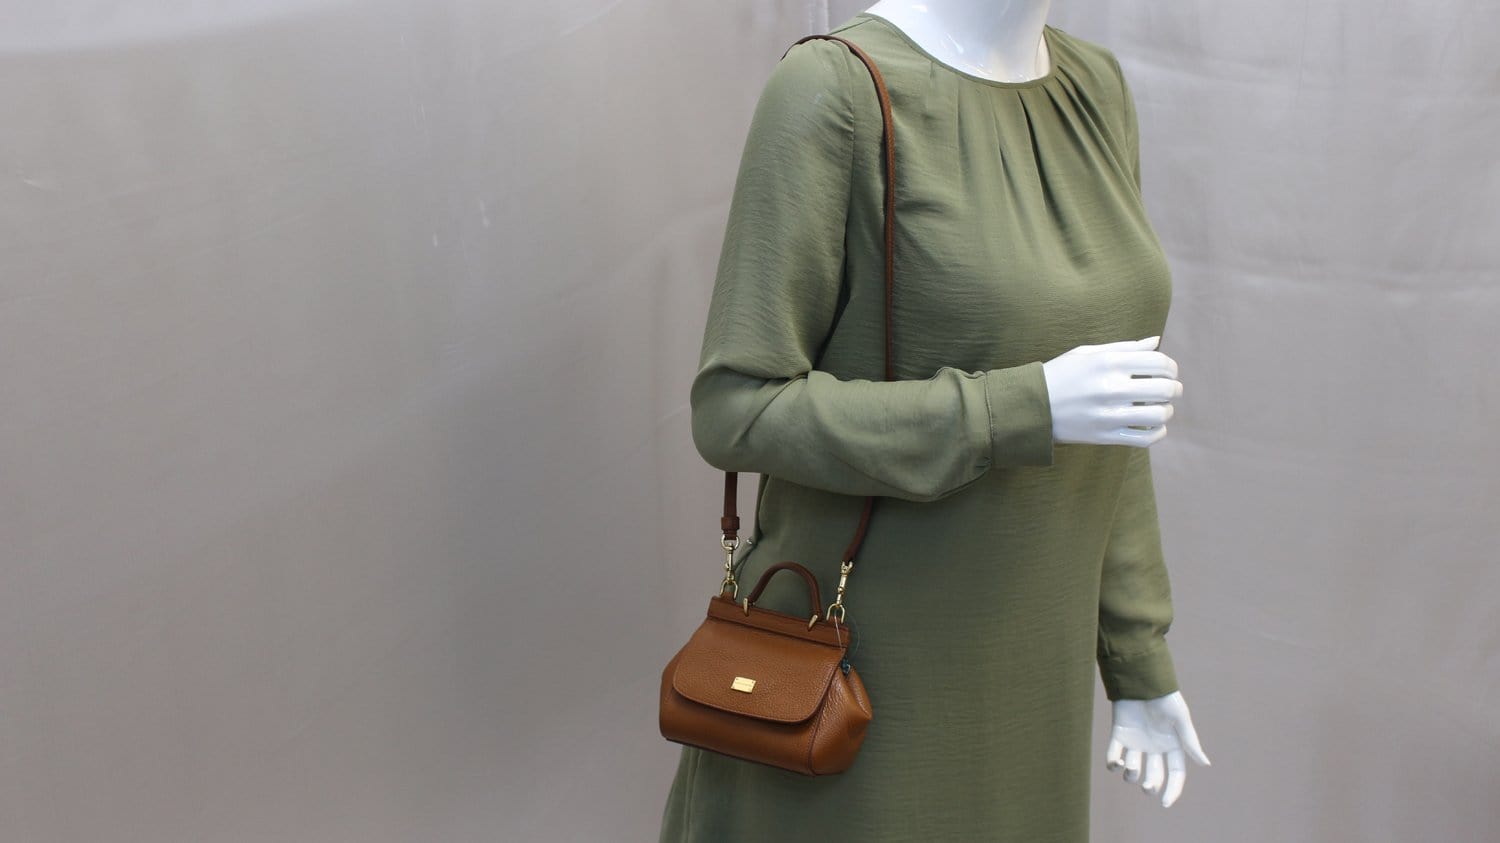 Sicily Medium Leather Shoulder Bag in Brown - Dolce Gabbana